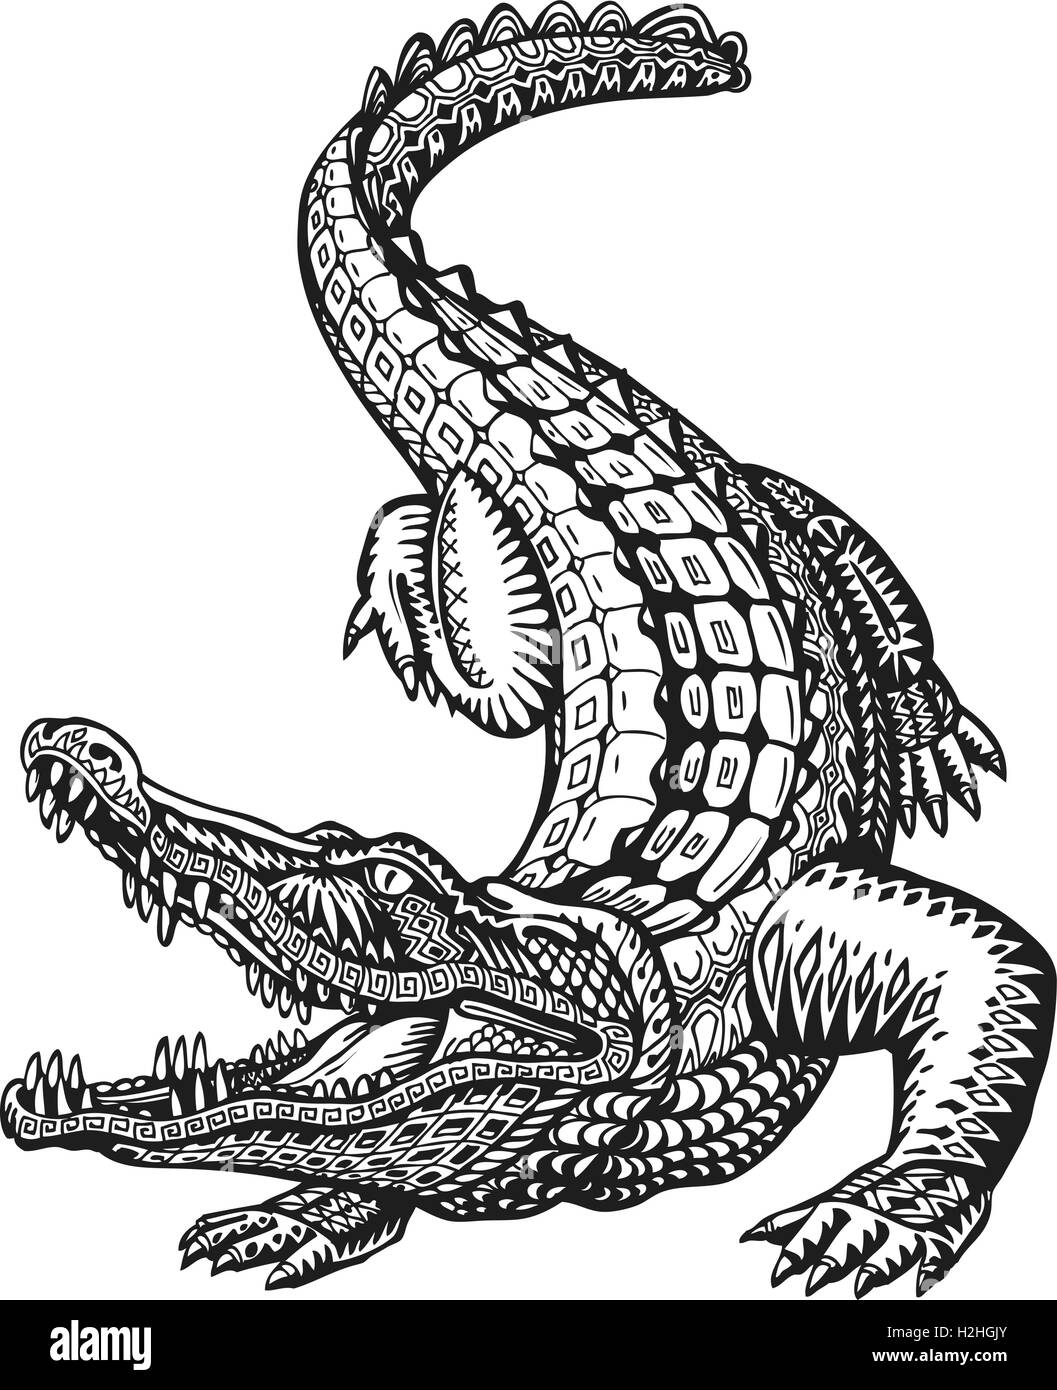 25 Easy Alligator Drawing Ideas - Draw an Alligator